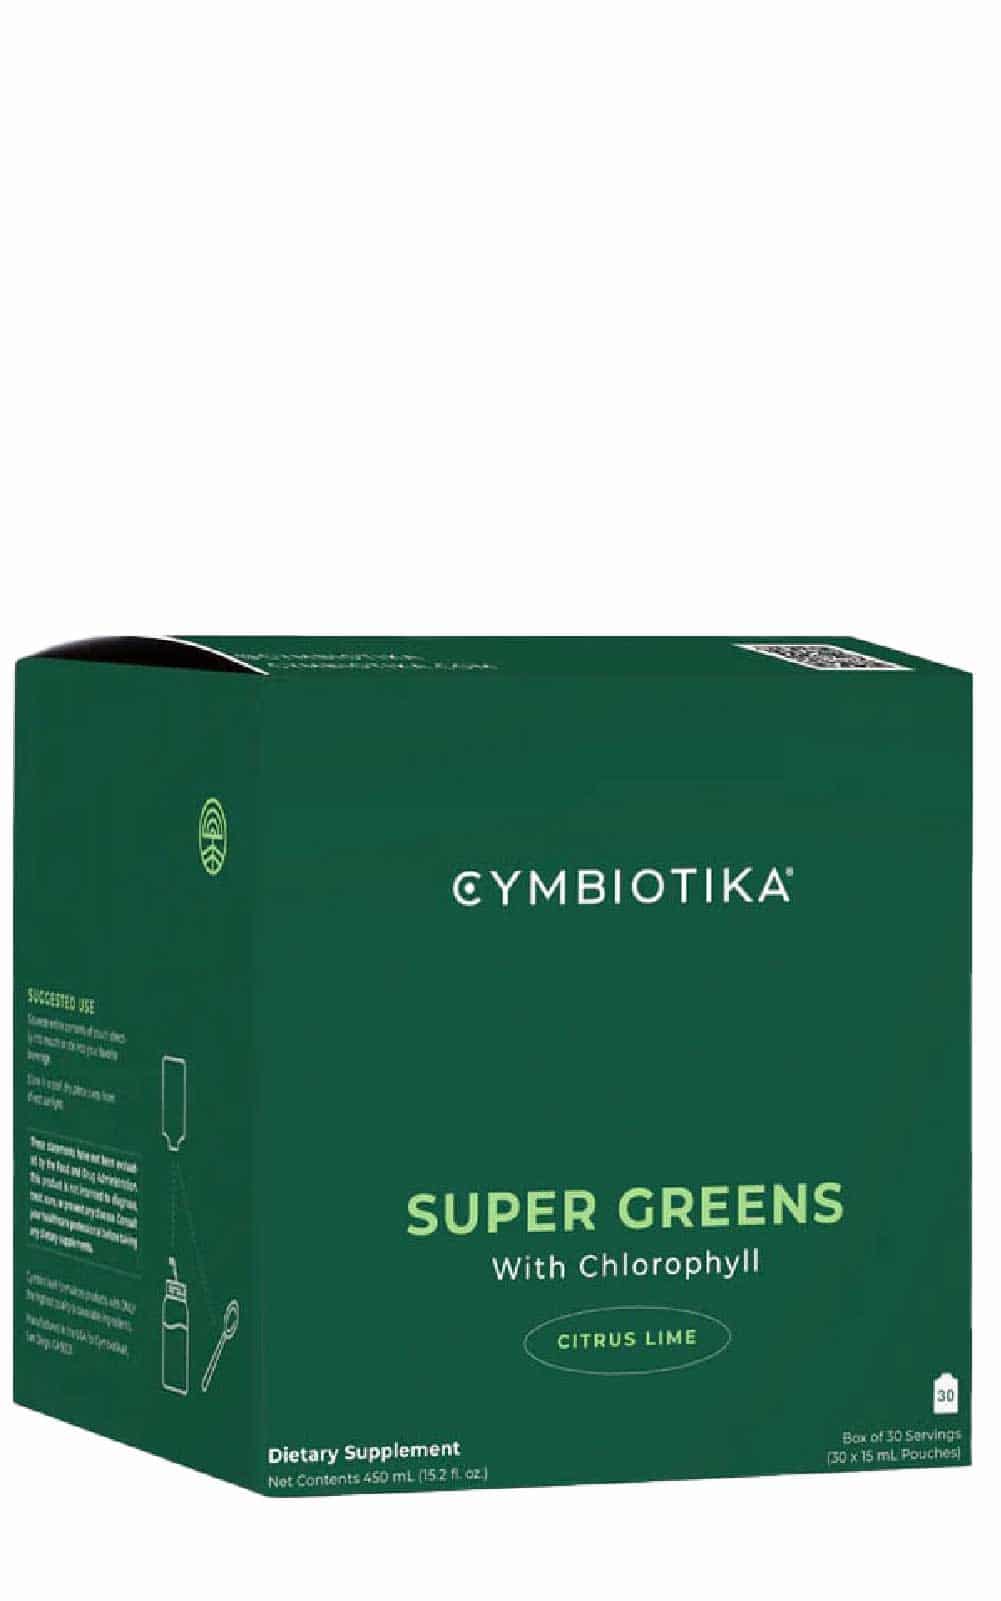 Buy Cymbiotika Super Greens at LiveHelfi